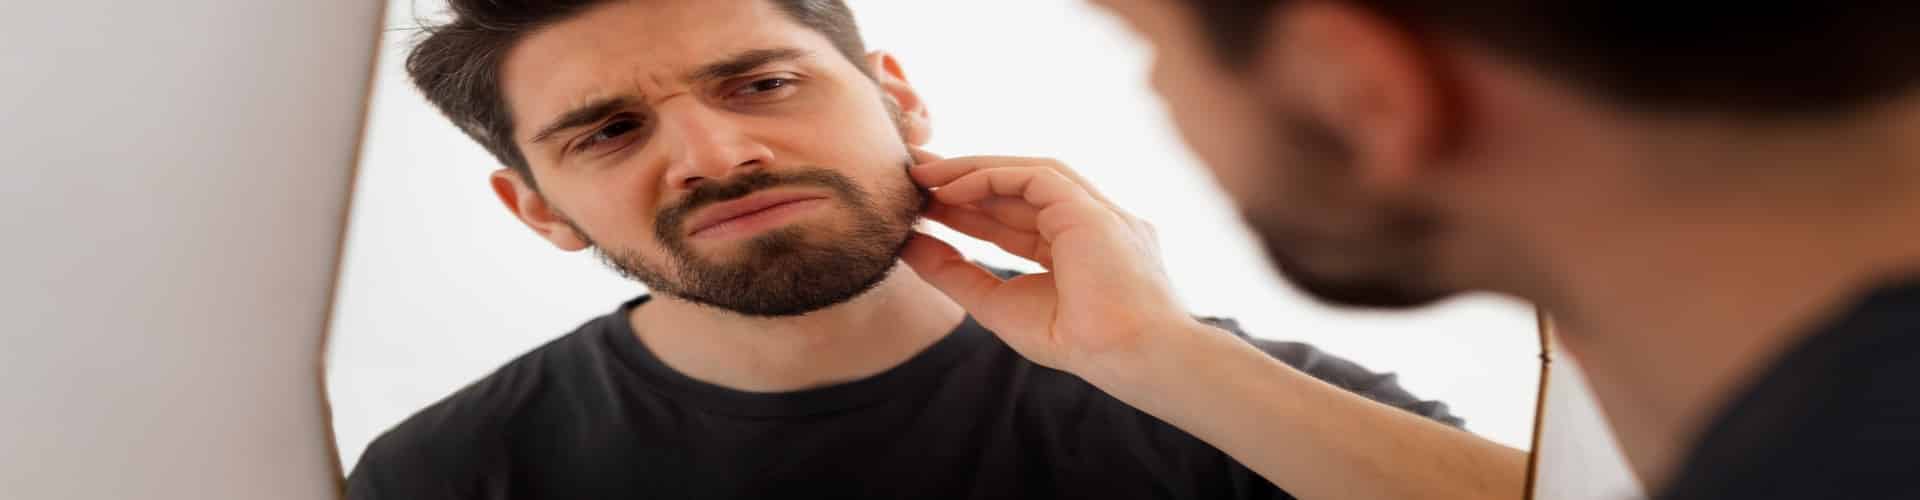 Alopecia na Barba: Entenda as Causas, Sintomas e Tratamentos Eficazes